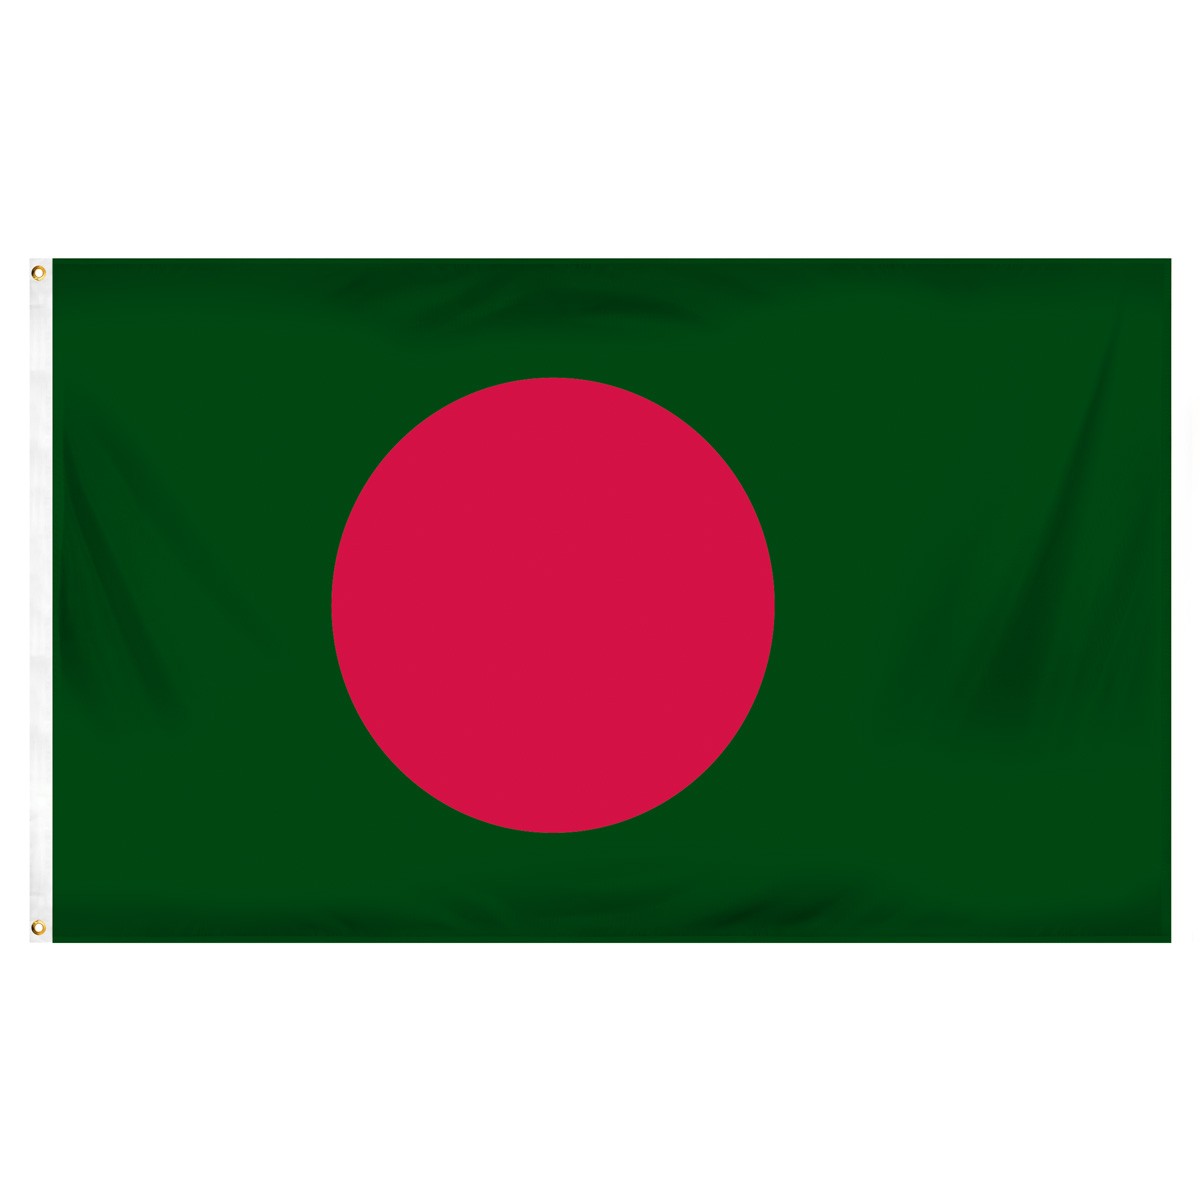 Bangladesh Single Table Flag